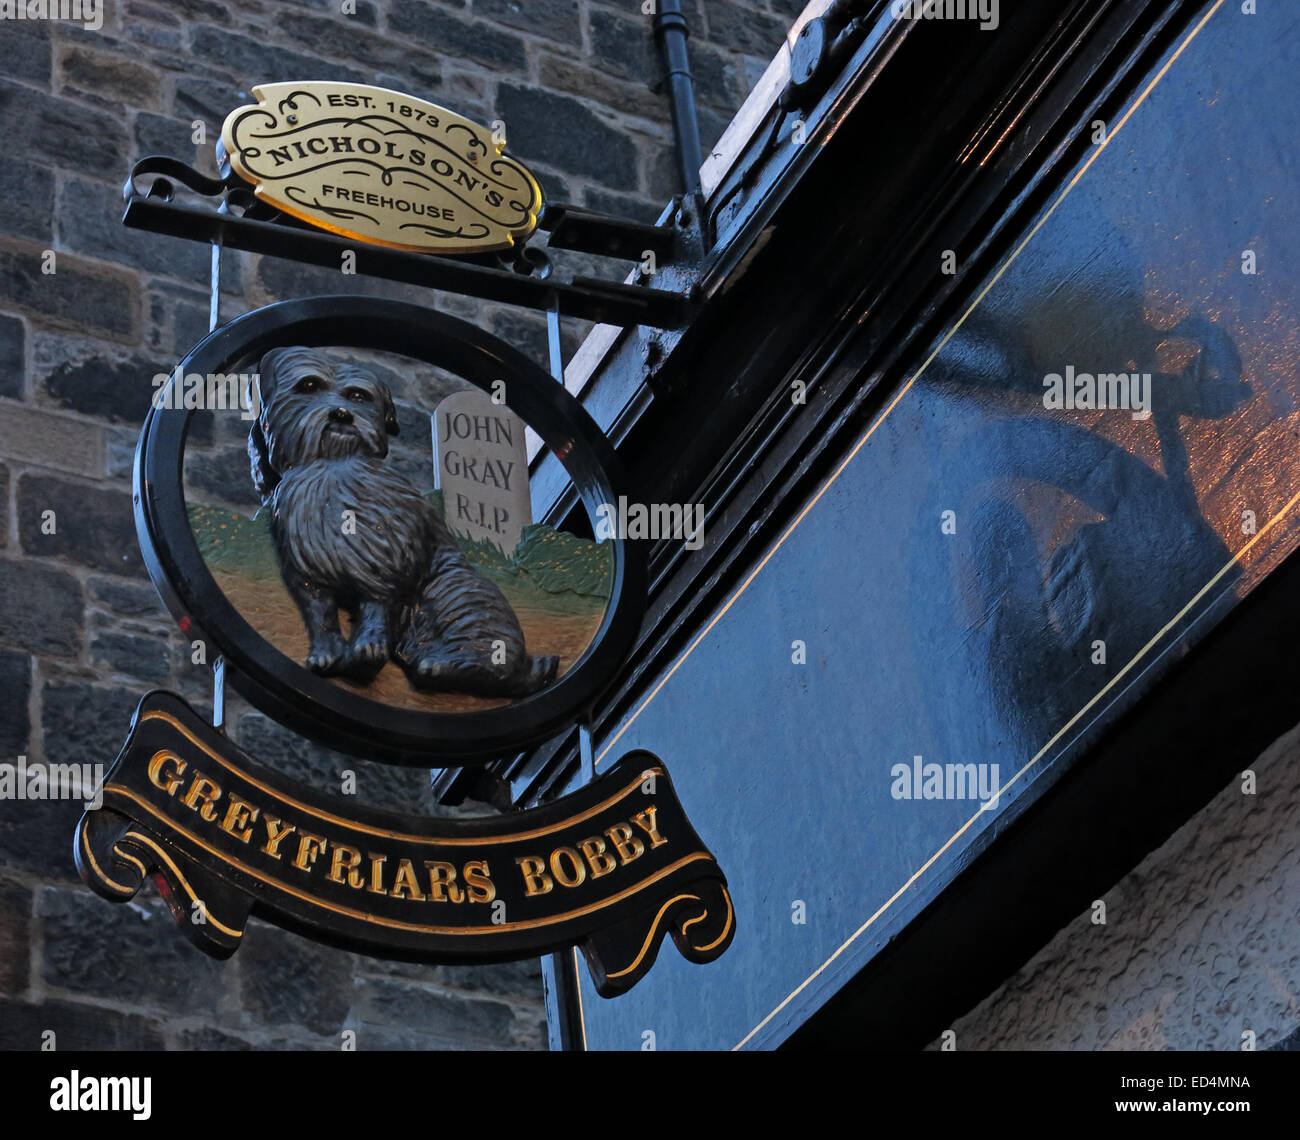 Greyfriars Bobby historischen Pub Schild draußen in der Dämmerung, Altstadt von Edinburgh, Hund draußen, Lothian, Schottland, Vereinigtes Königreich Stockfoto